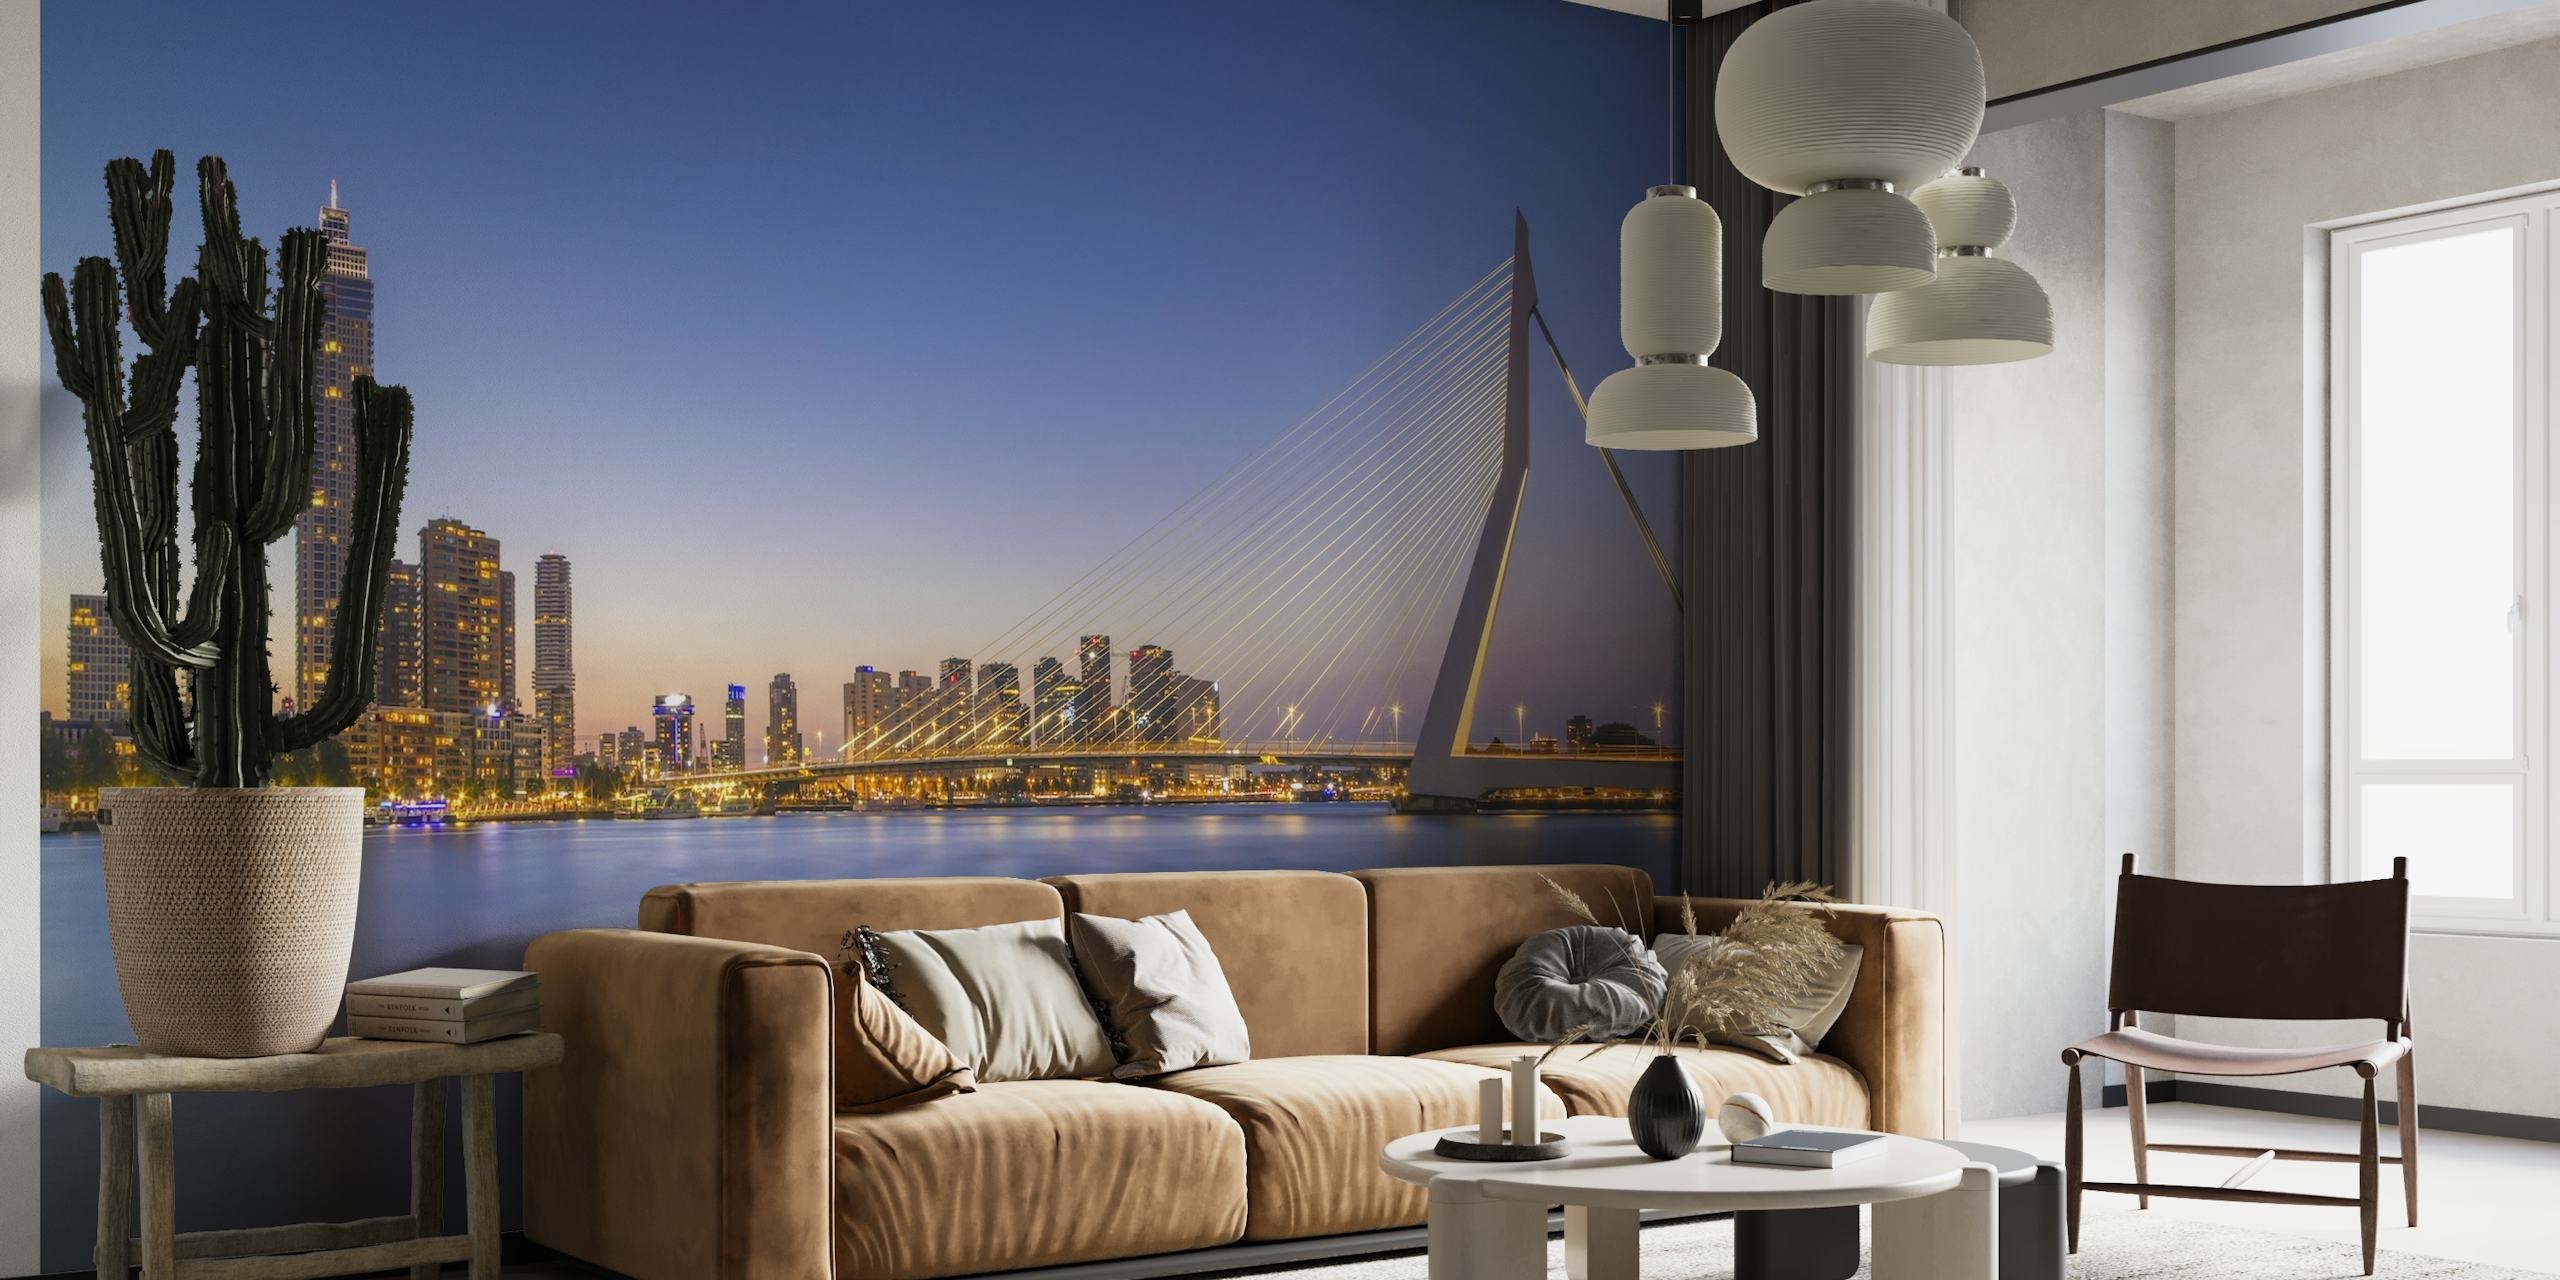 Vægmaleri af Erasmus Bridge og Rotterdams skyline i skumringen med reflekterende vand